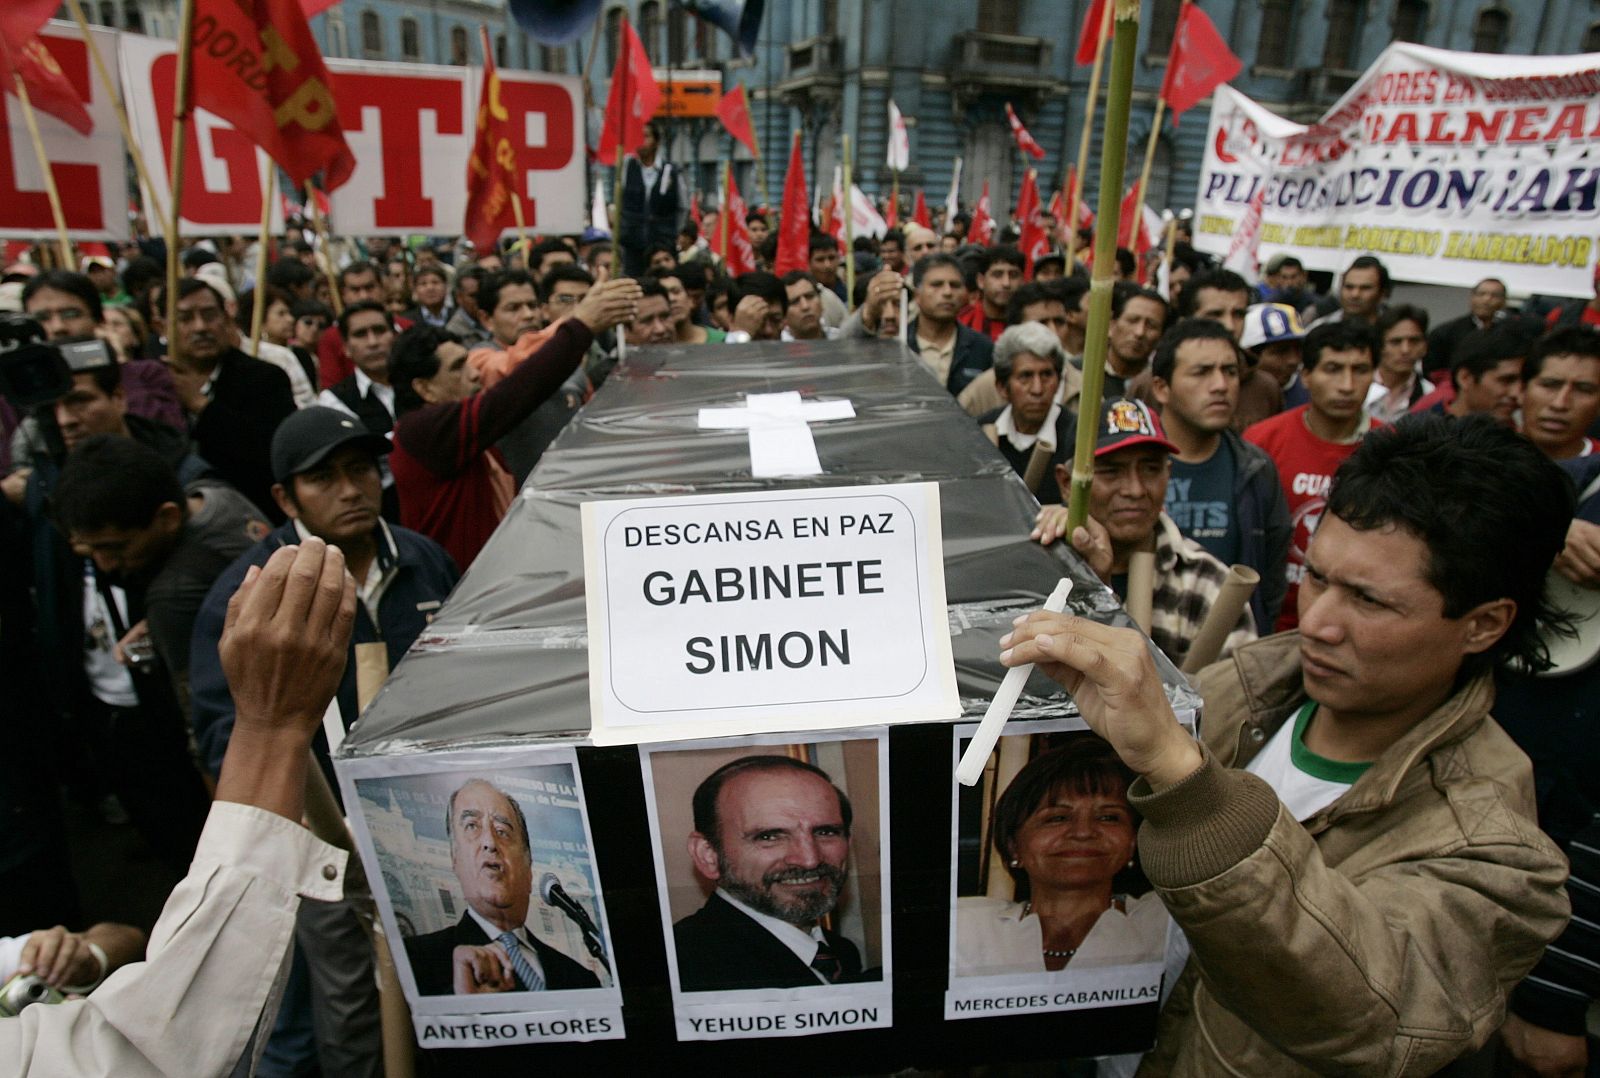 Manifestantes con el ataúd simbólico del primer ministro dimisionario Yehude Simon, este miércoles en Lima.